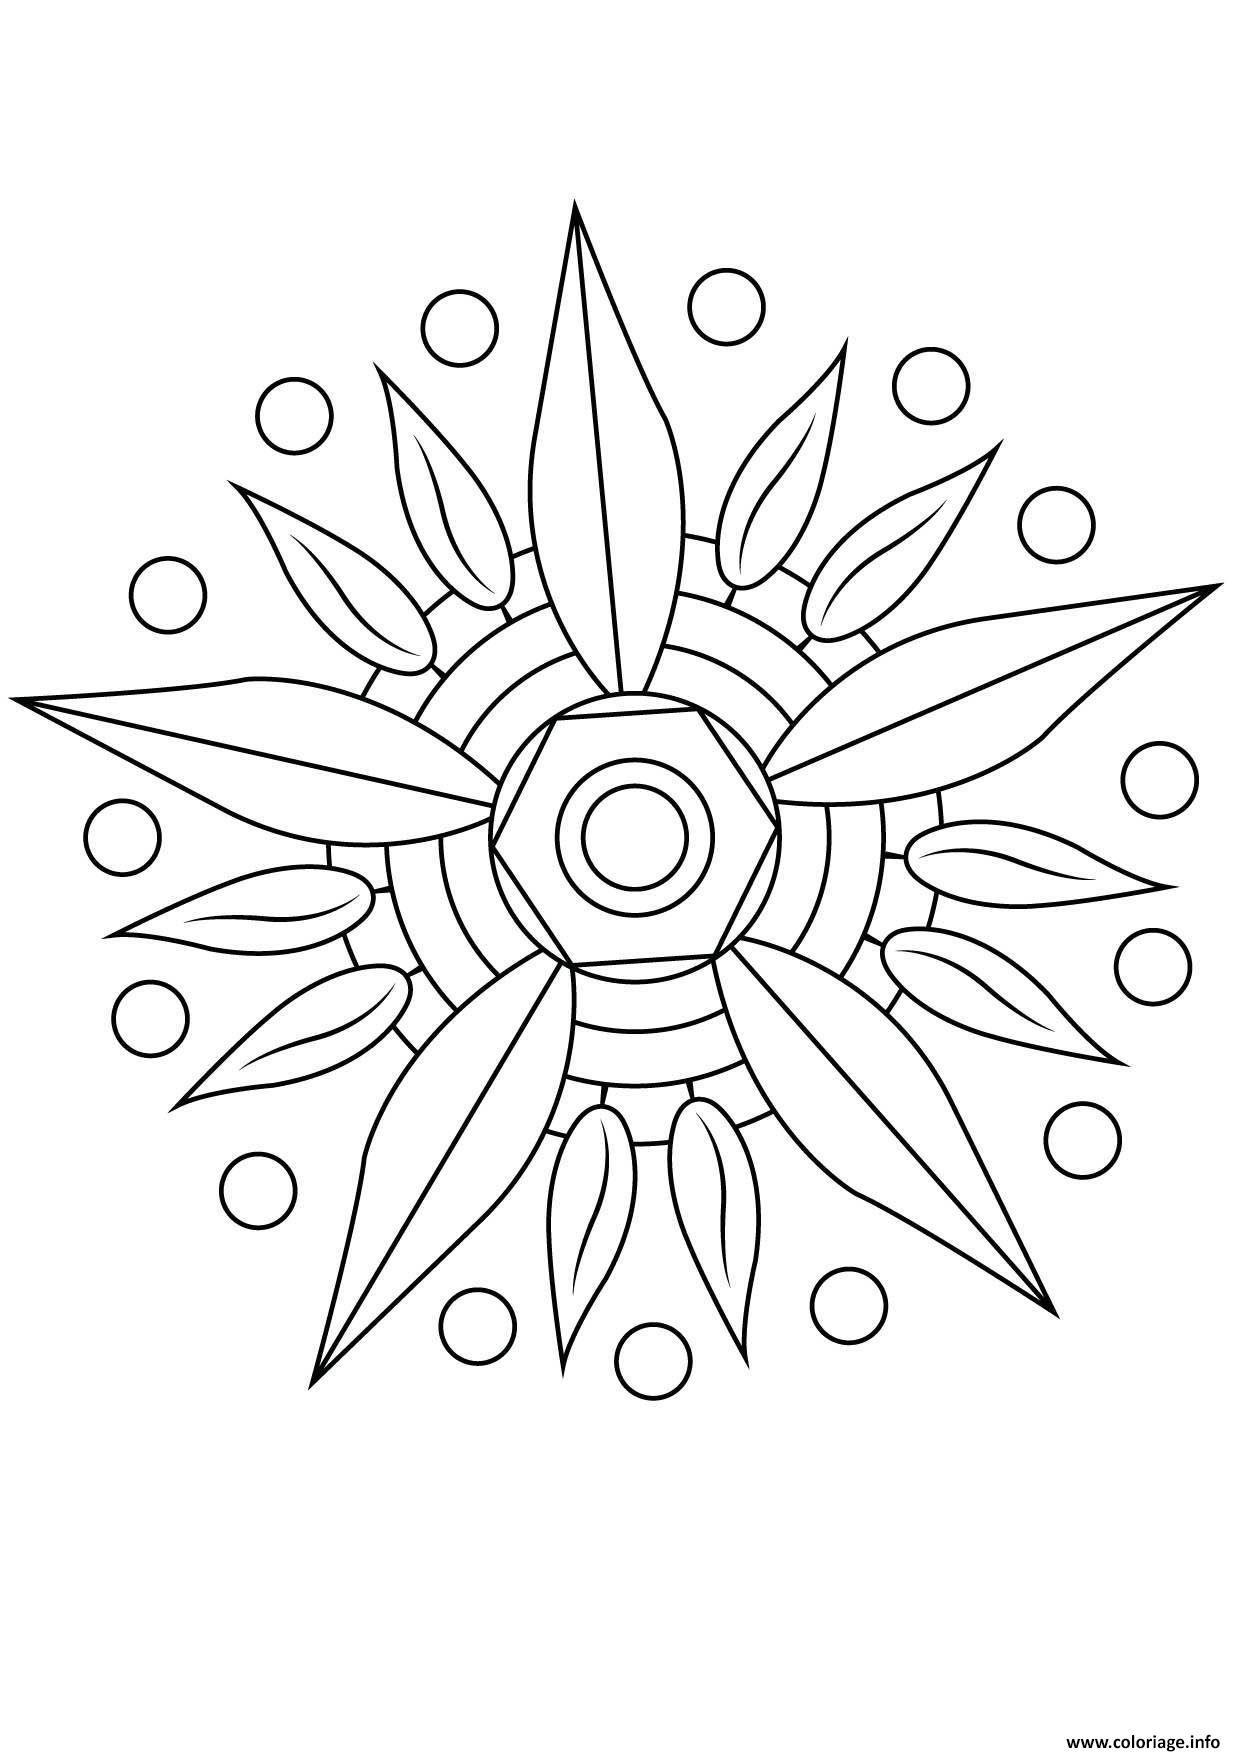 Coloriage Mandala Fleur 12 Jecolorie Com